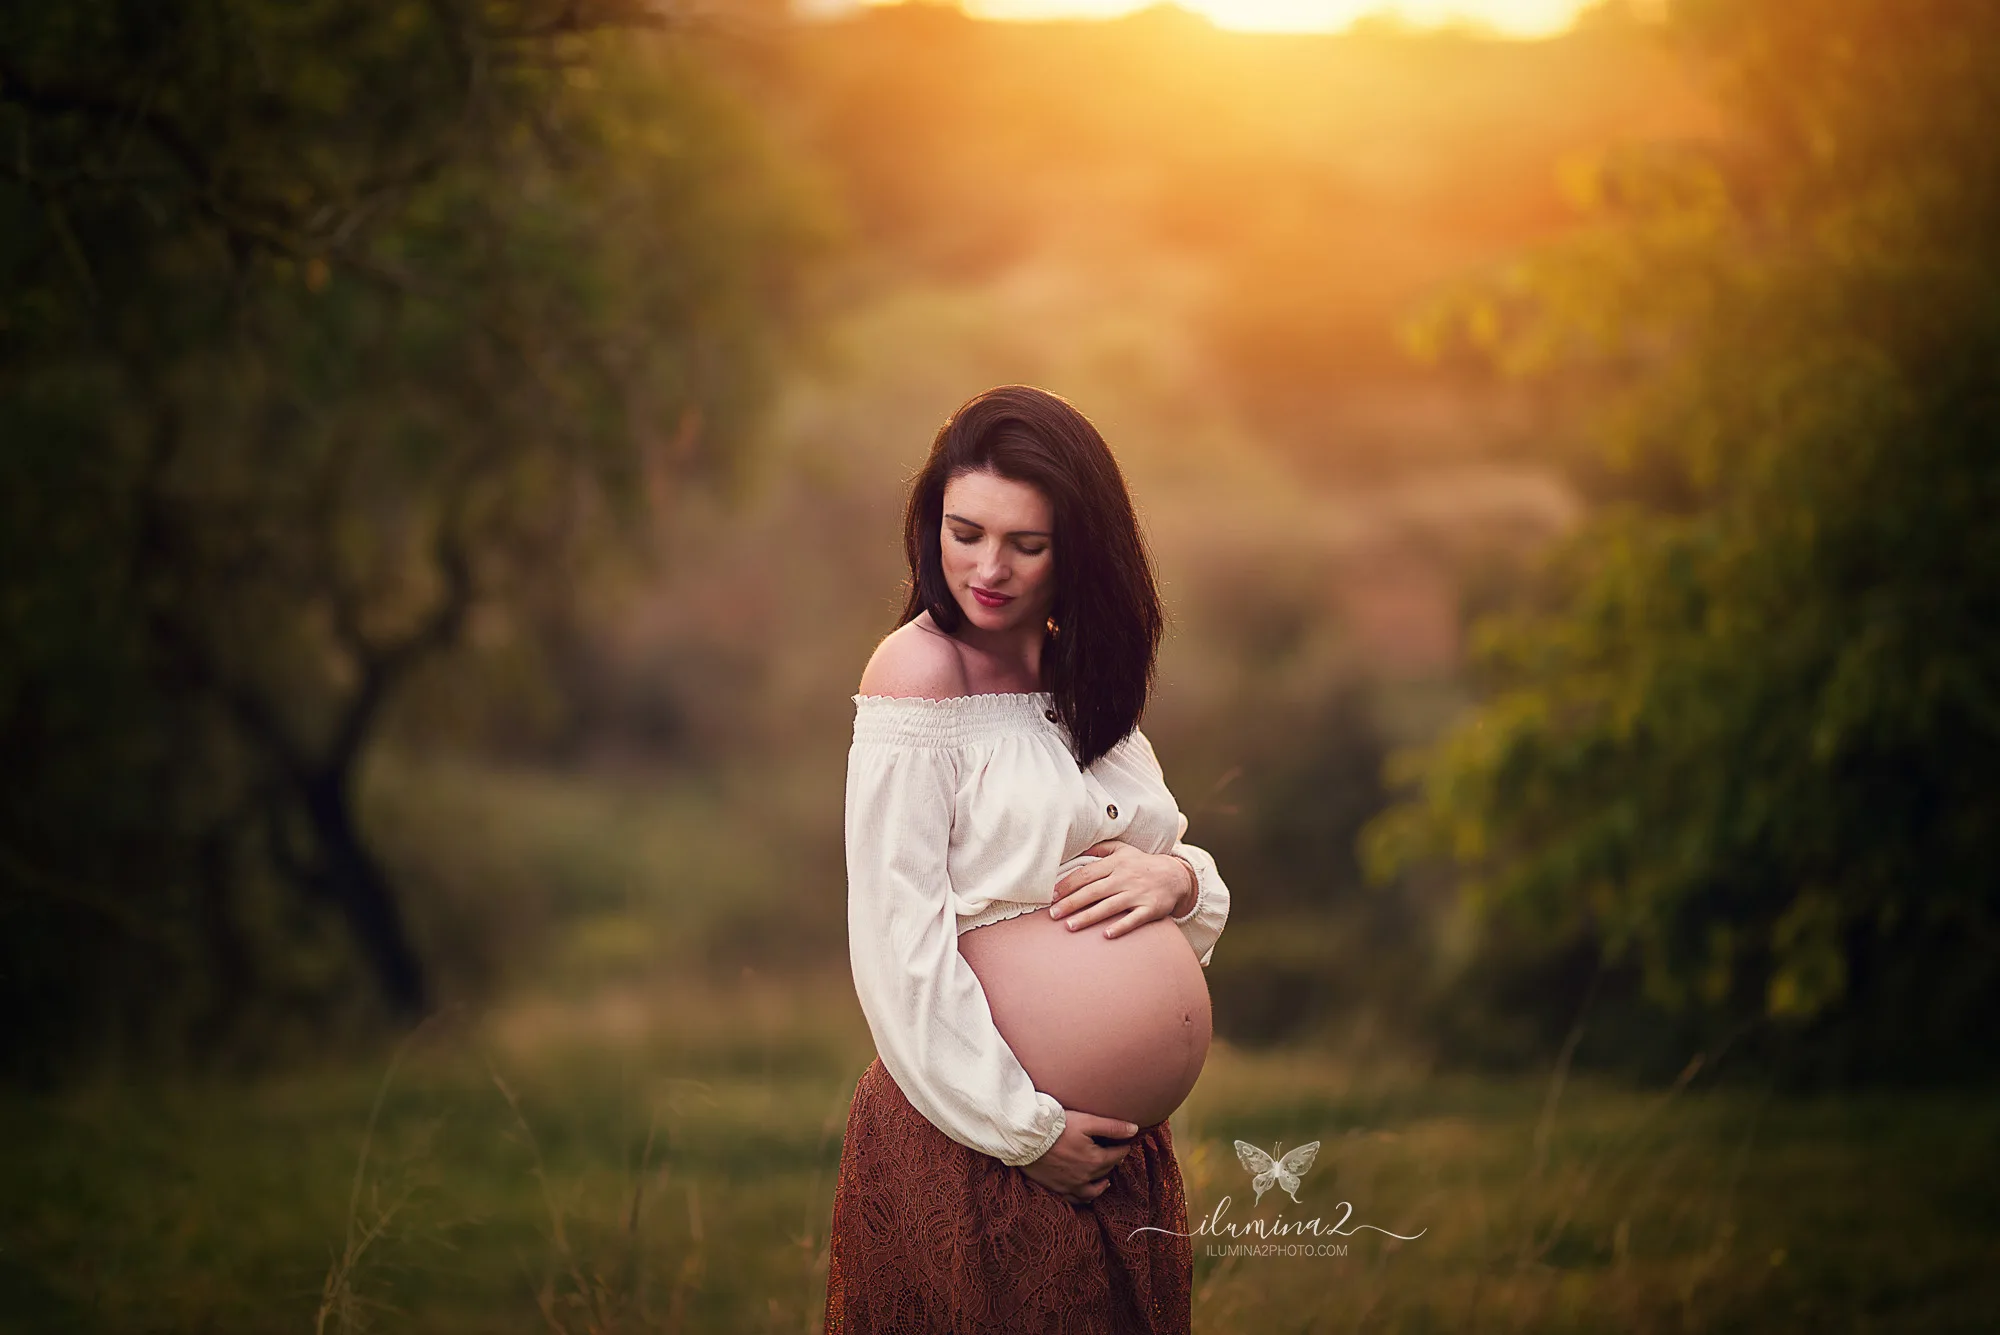 Gracioso refugiados Fahrenheit Ropa para sesión de fotos de embarazada • ilumina2 photo